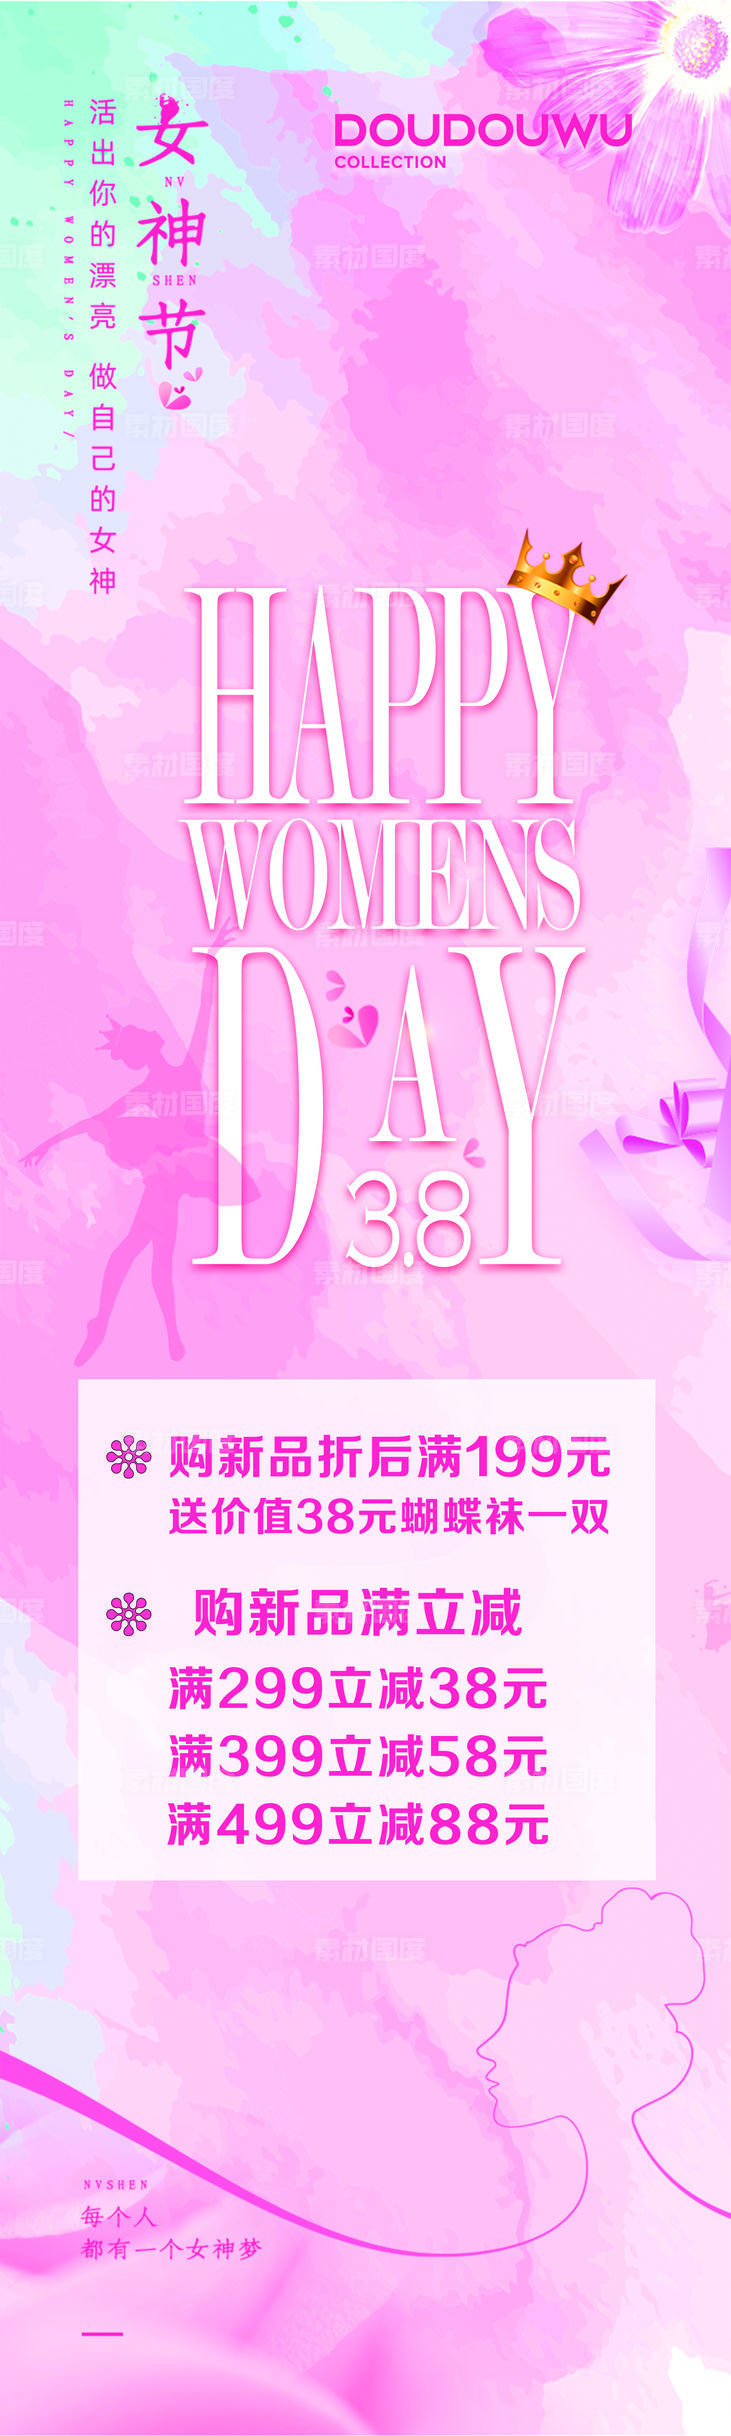 3.8女神节 妇女节 女装 女鞋 女包活动宣传海报清新 粉红色 红色